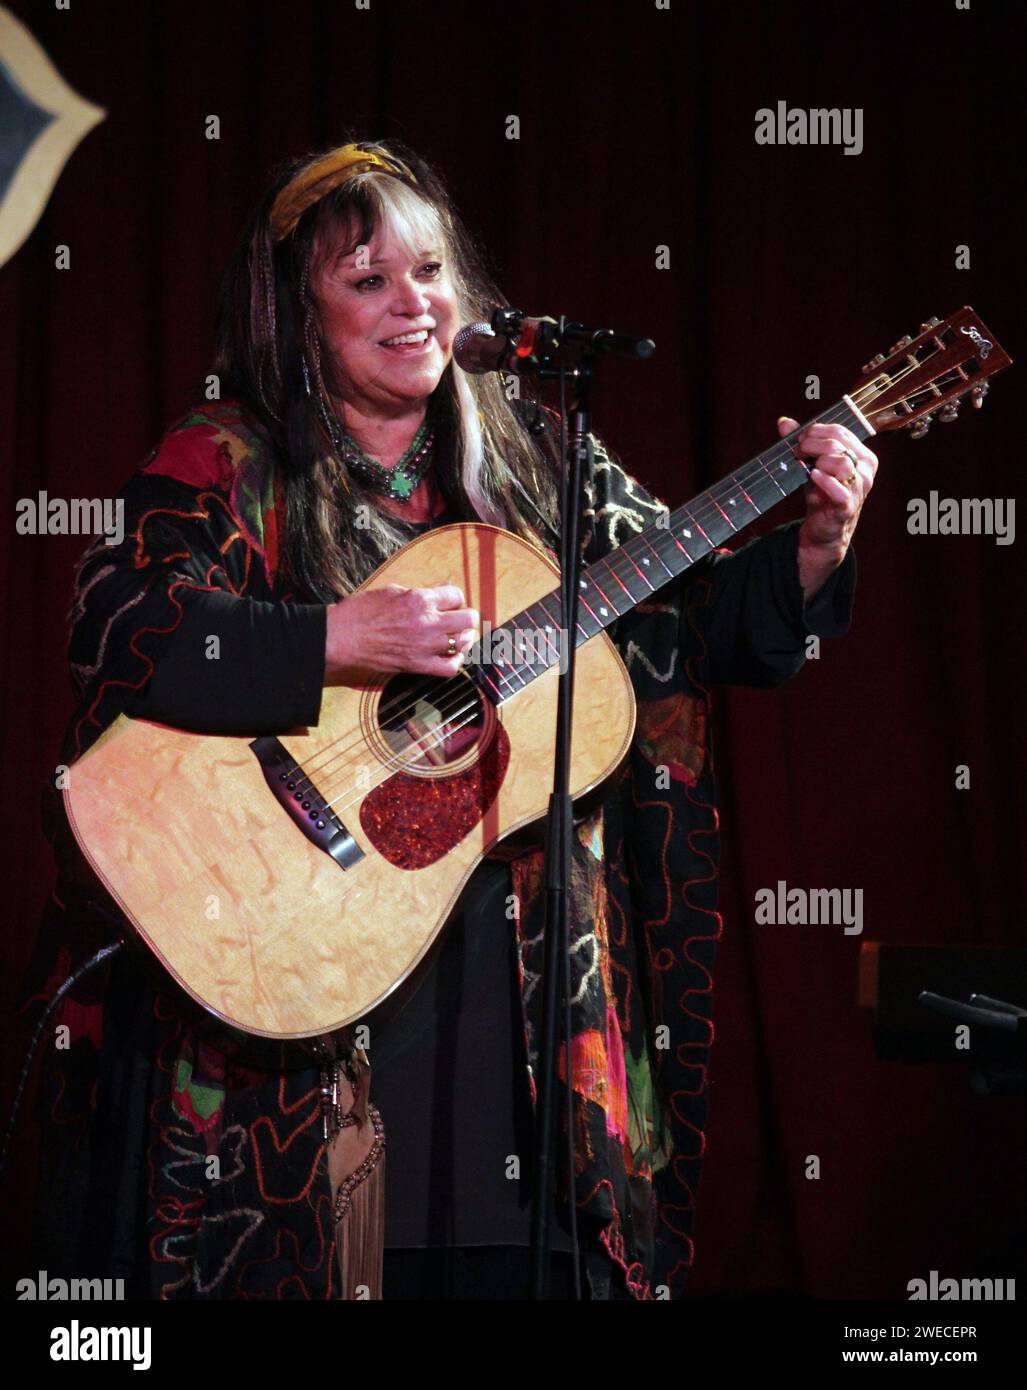 Melanie ist gestorben. Die Sängerin und Songwriterin Melanie Safka-Schekeryk, bekannt als Melanie, die vor allem für ihre Hits aus den späten 60er und frühen 70er Jahren wie „Brand New Key“, „Lay Down (Candles in the Rain)“, „Ruby Tuesday“ bekannt ist. und What Have They Done to My Song Ma spielte am 7. April 2012 im B.B. King Blues Club & Grill in New York City. Foto: Henry McGee/MediaPunch Stockfoto